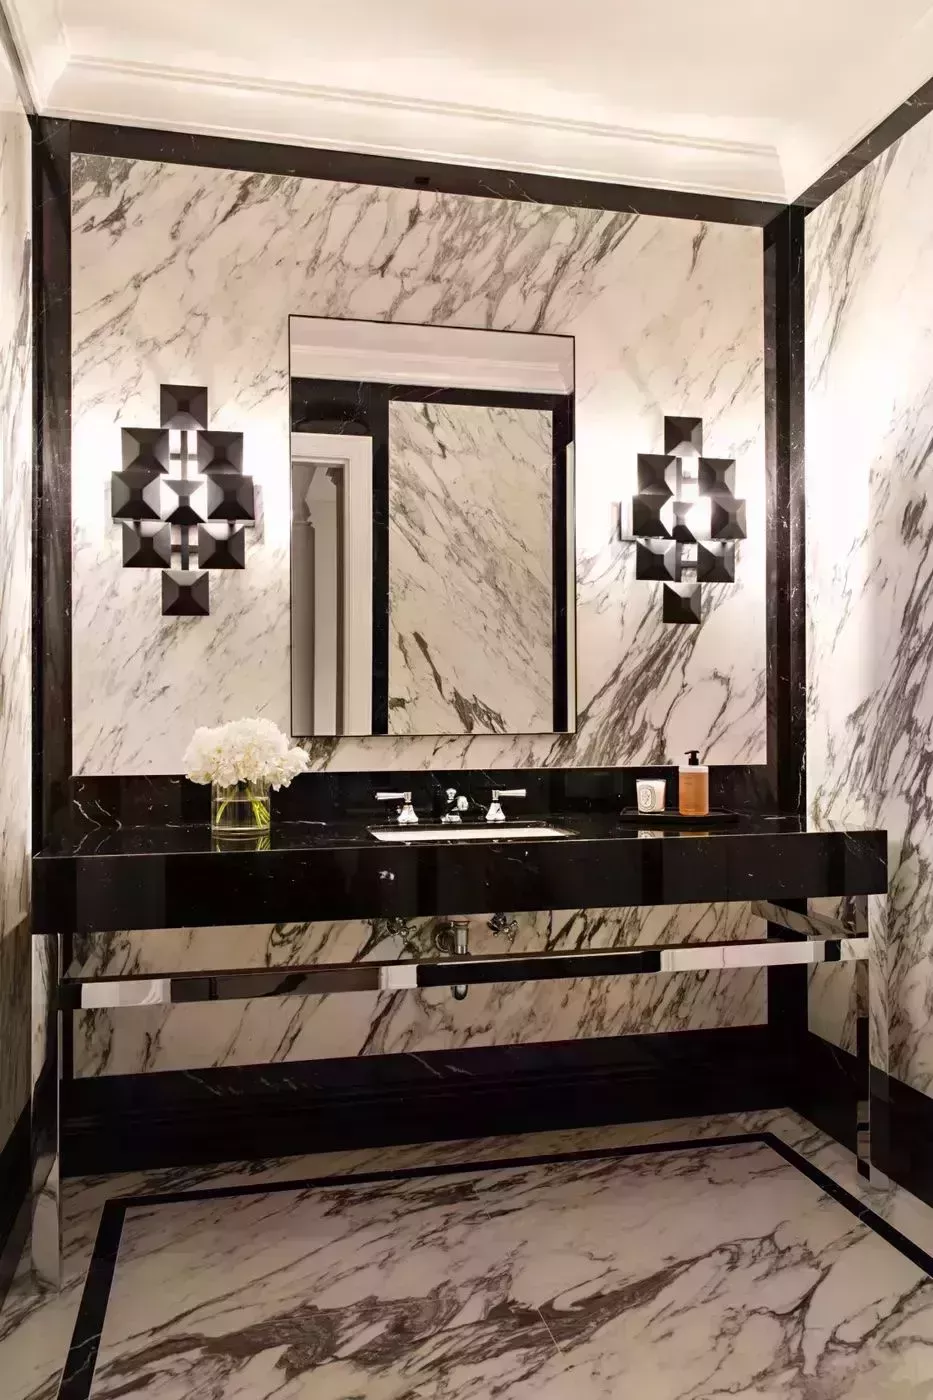 20 interiores inspiradores que muestran brillantes ideas de iluminación para el baño 